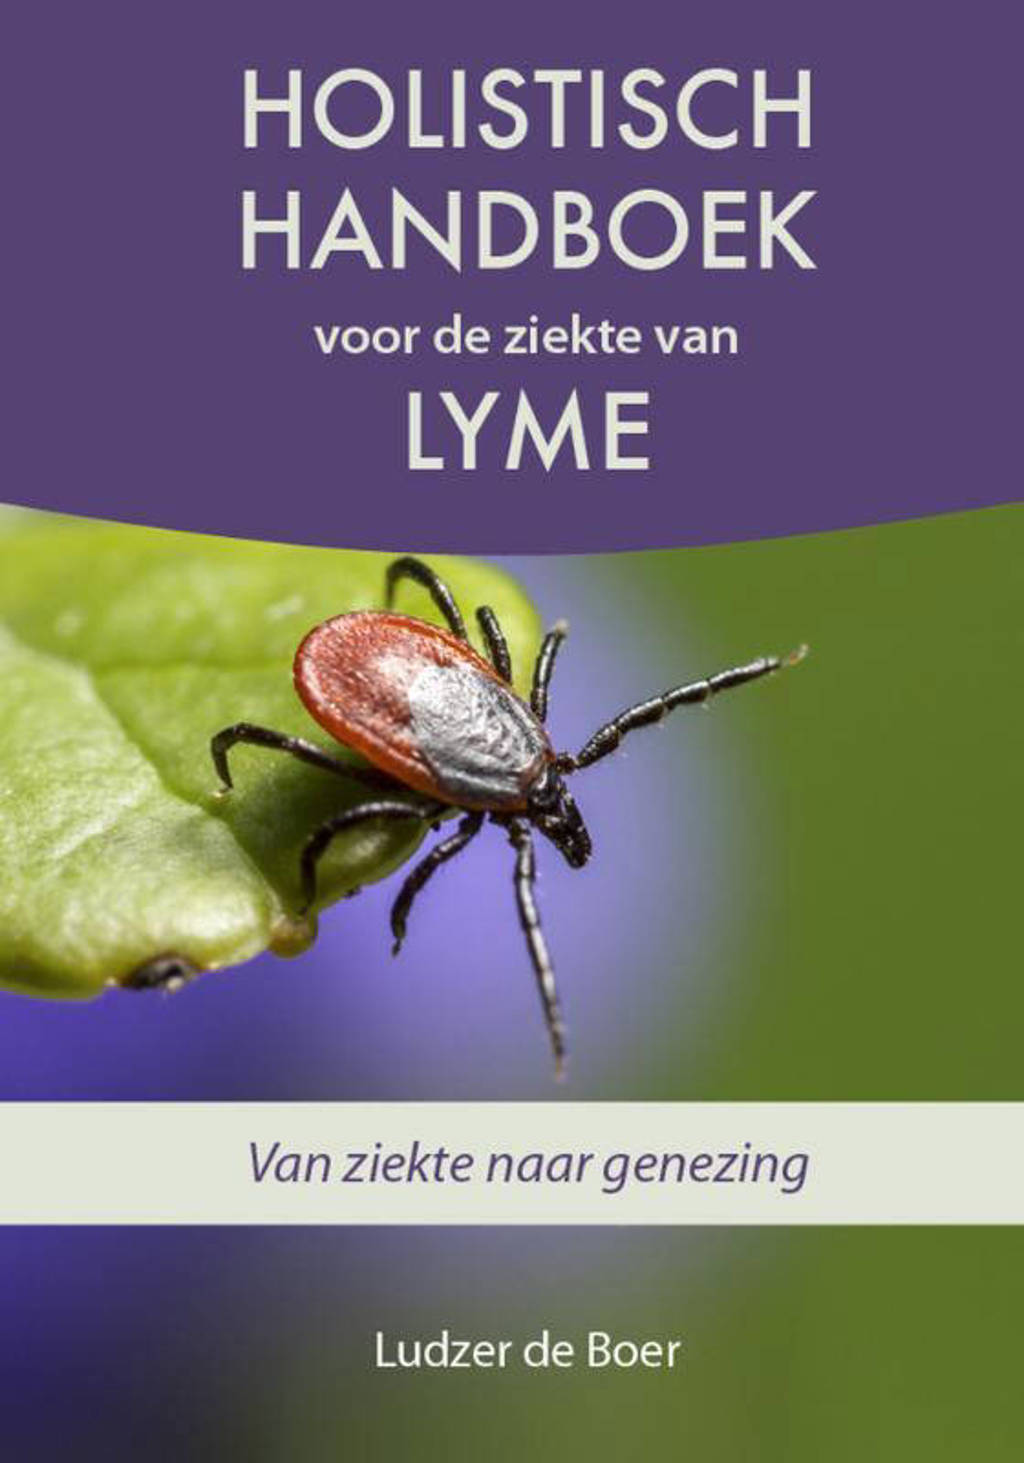 Holistisch handboek voor de ziekte van Lyme - Ludzer de Boer